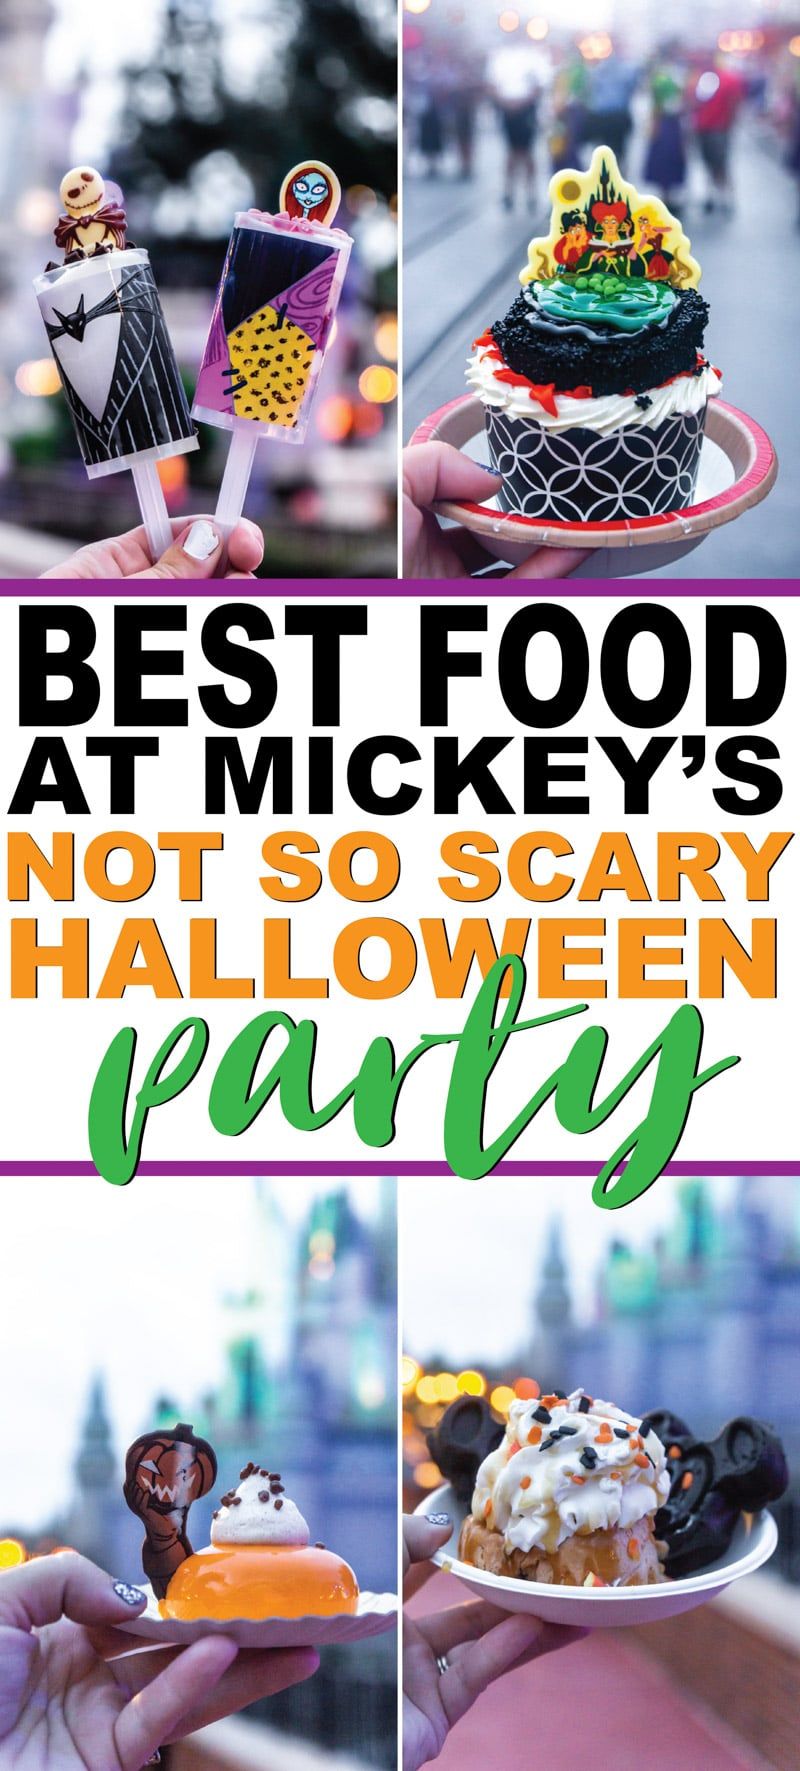 Konečný sprievodca po Mickeyho nie tak strašidelnej Halloweenskej párty v roku 2019 v Disney Worldu! Všetko od pravidla o kostýmoch, ktoré jedlá a dezerty sú najlepšie, s ktorými sa môžete odfotiť, a samozrejme nejaké DIY kostýmy a košele, ktoré si môžete vyrobiť na párty! A nezabudnite na všetky zasvätené tipy, ako vidieť najviac postáv a získať najviac cukríkov!